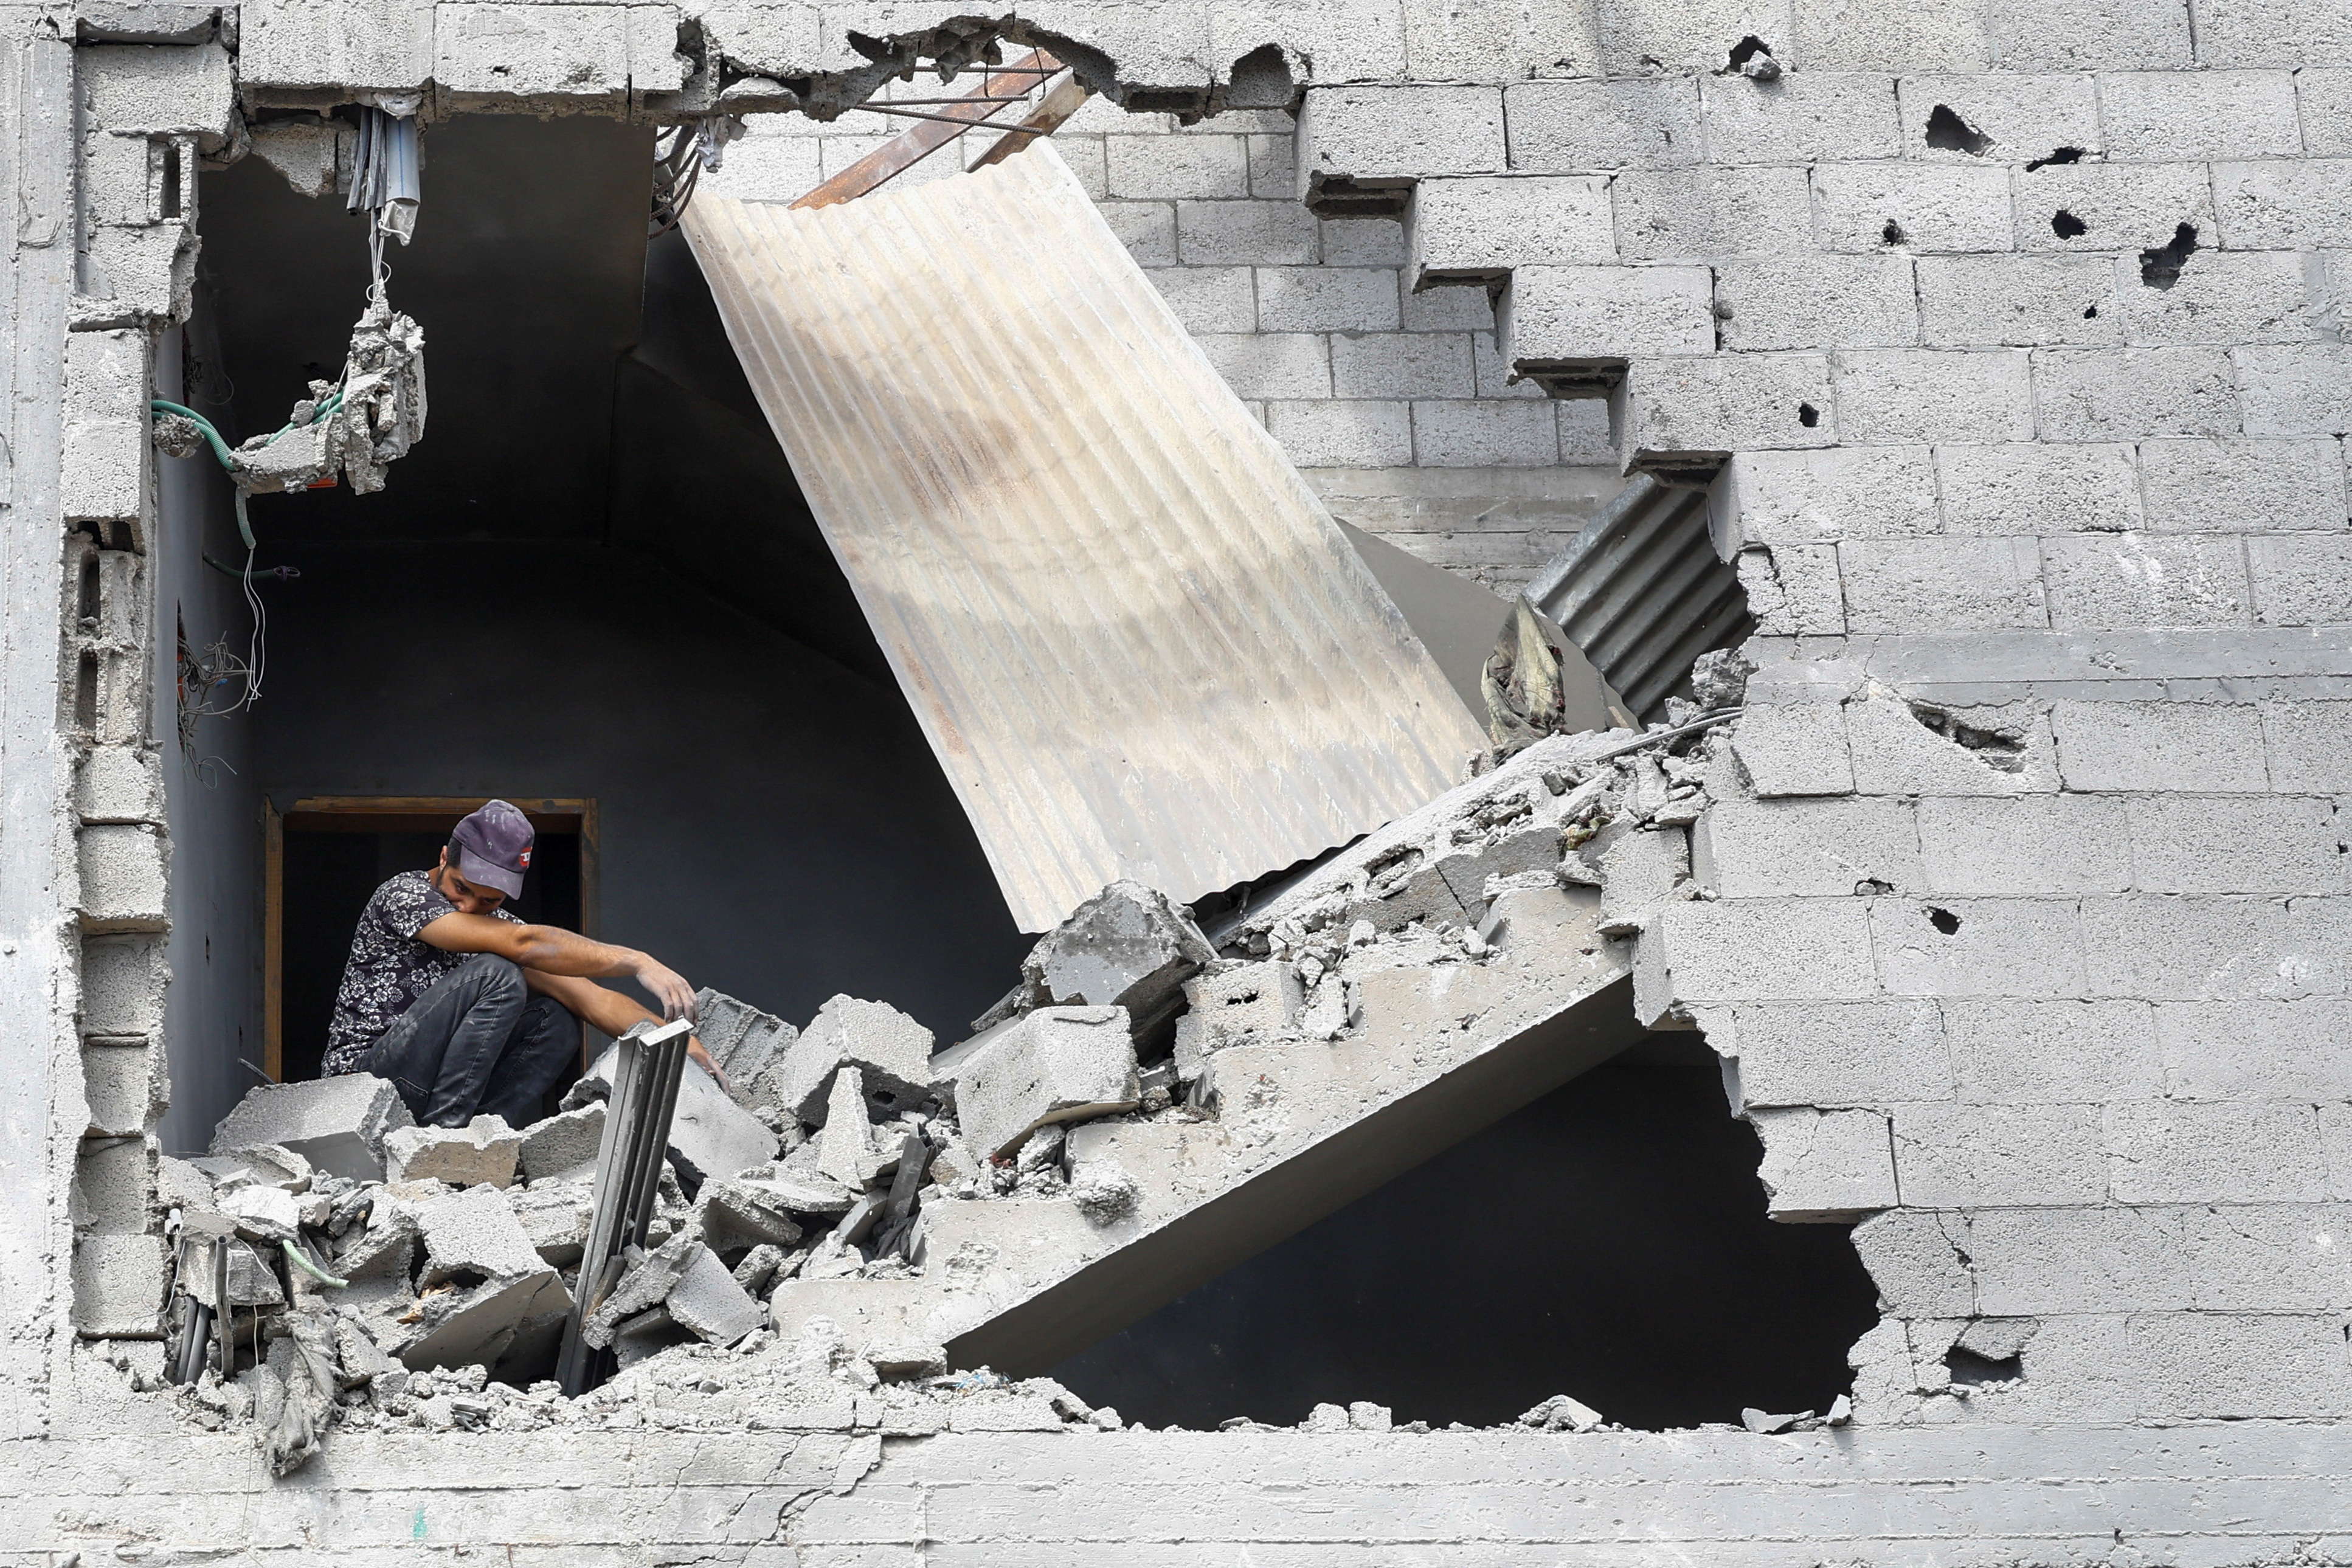 16일 가자지구 남부 칸 유니스에서 이스라엘의 공습으로 파괴된 집터에 한 남자가 앉아 있다. 로이터 연합뉴스